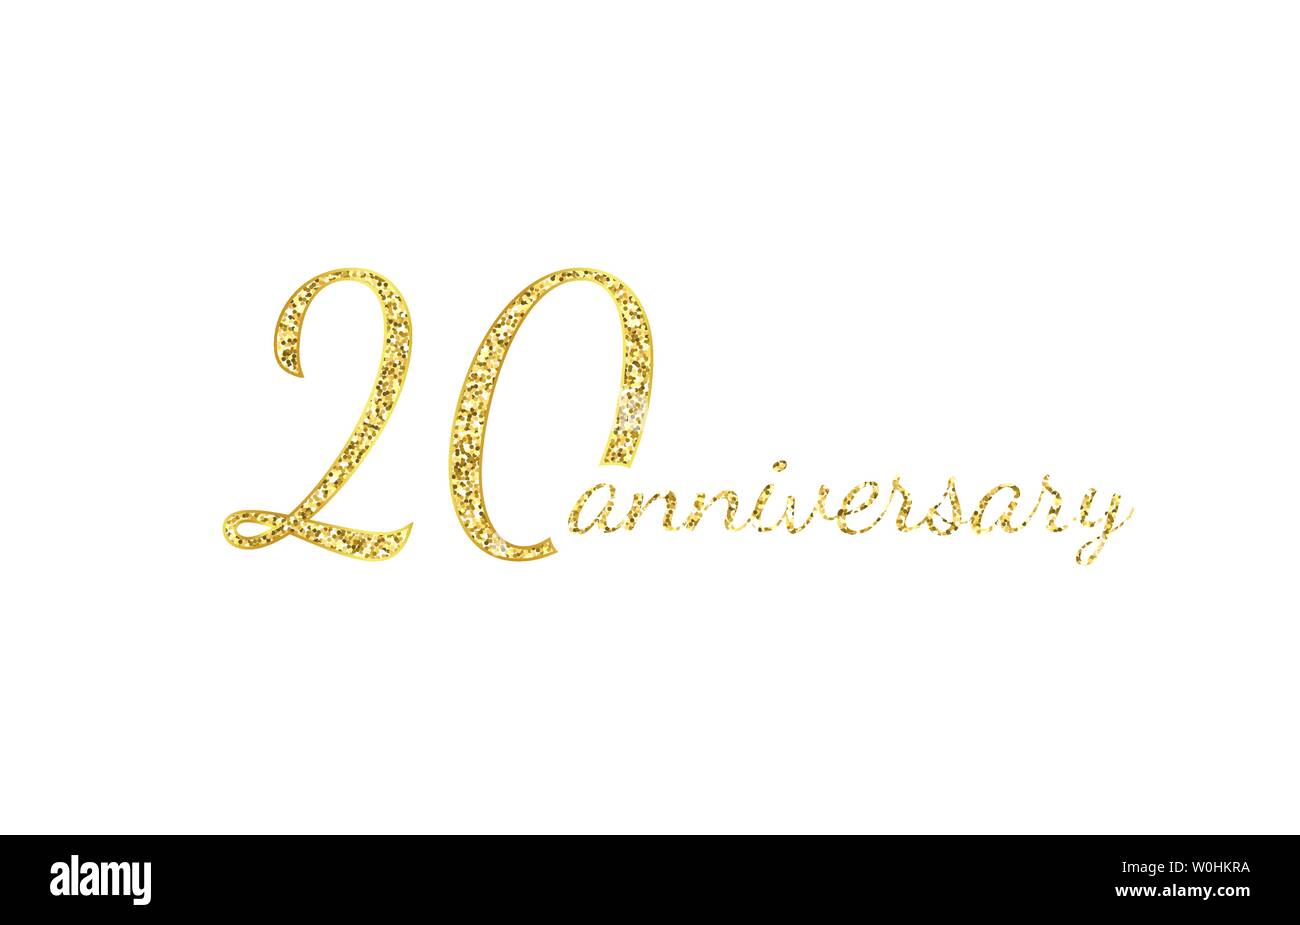 20 anniversario concetto del logo. Xx anni icona compleanno. Isolate i numeri d'oro su sfondo nero. Illustrazione Vettoriale. EPS10. Illustrazione Vettoriale